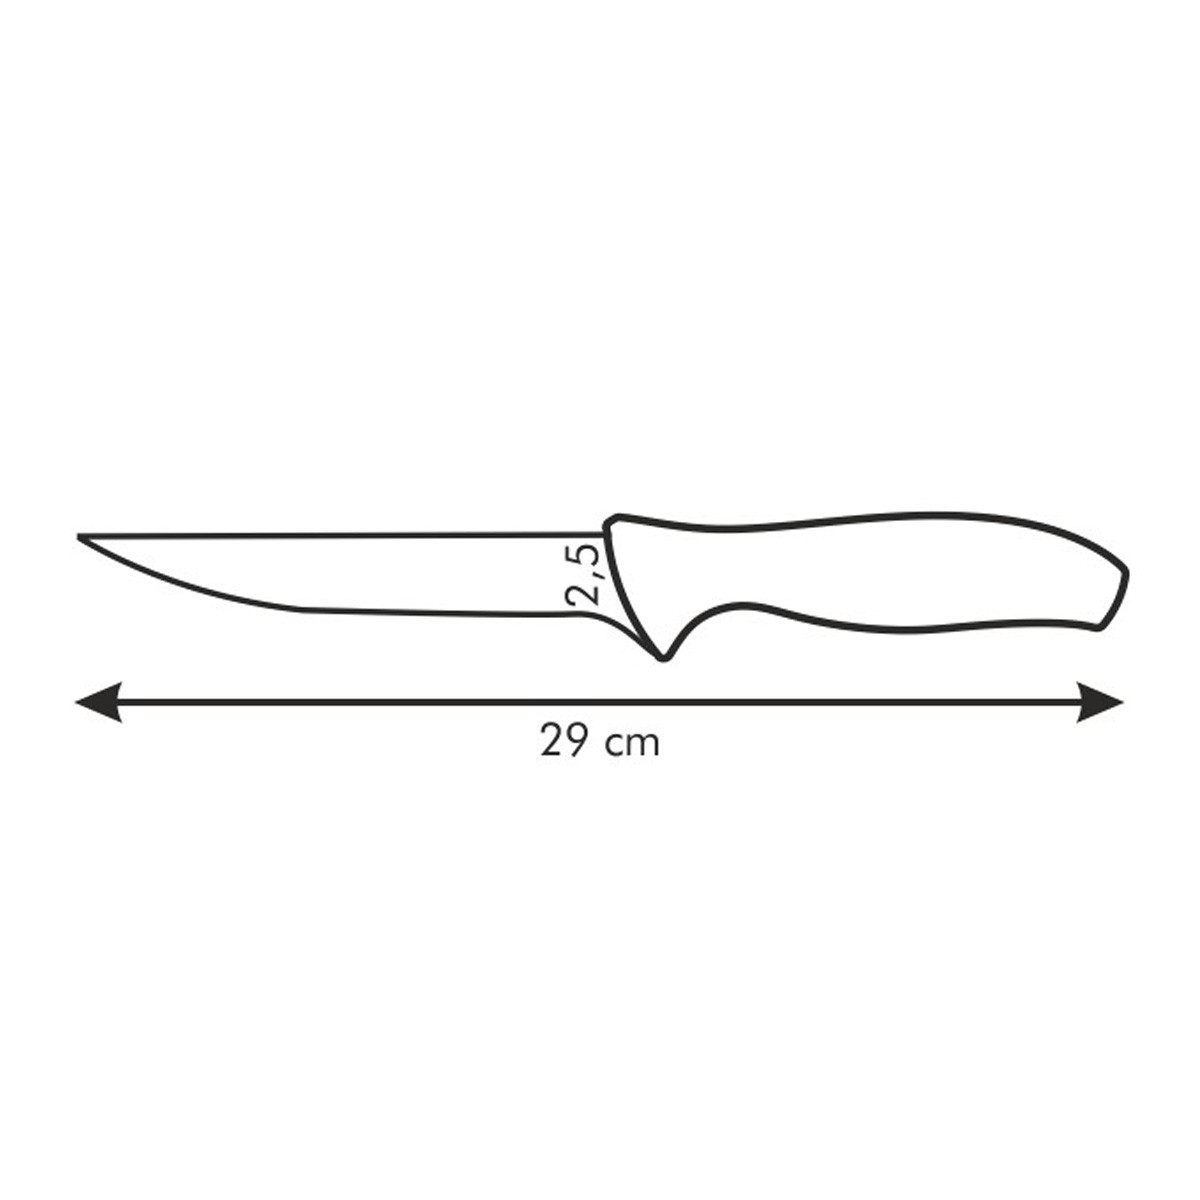 Nóż do usuwania kości SONIC 16 cm